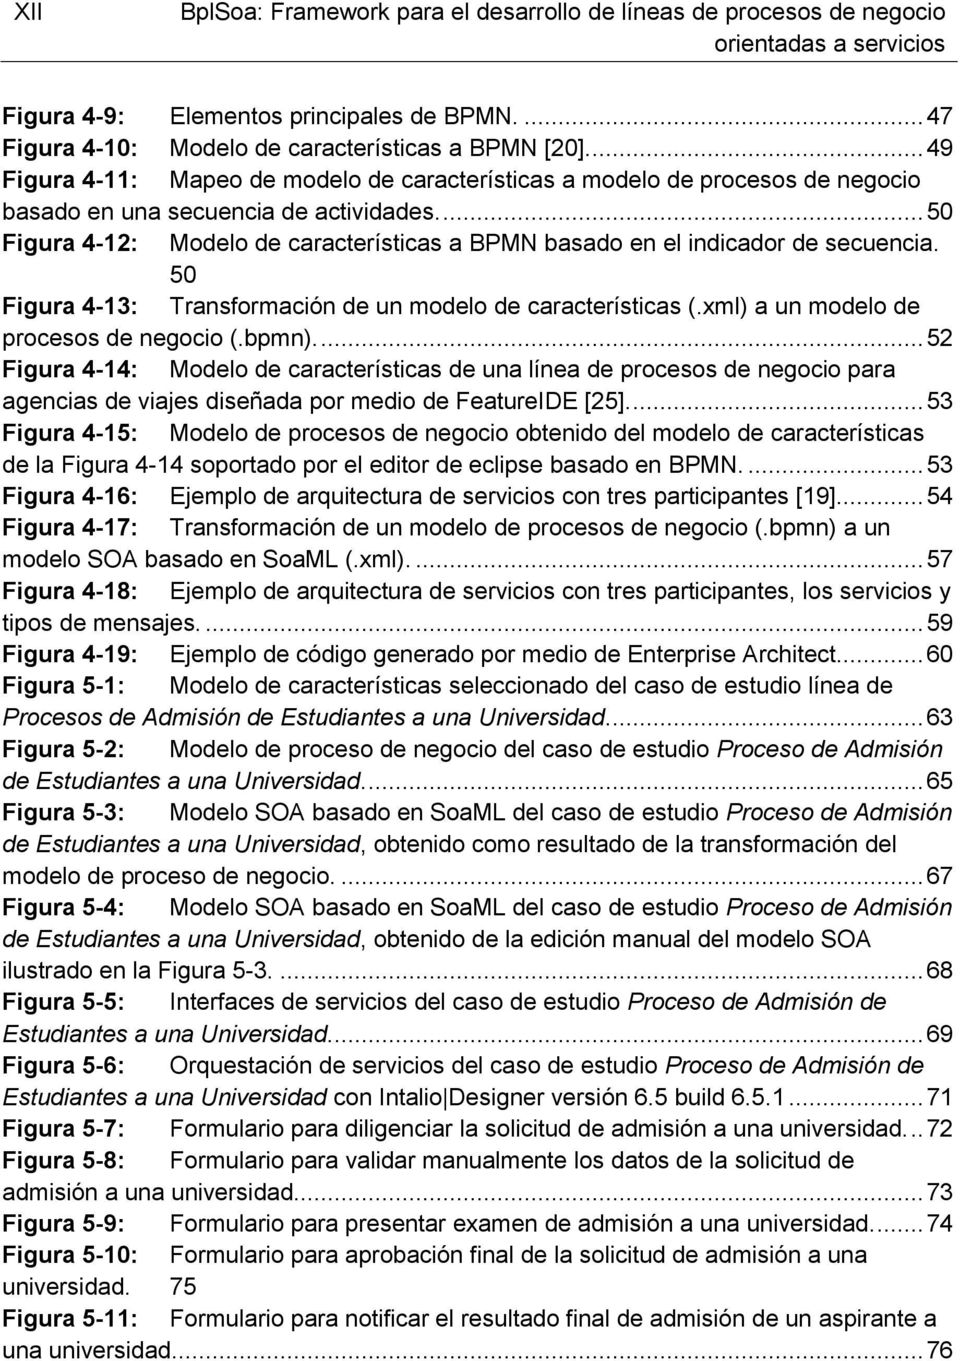 ... 50 Figura 4-12: Modelo de características a BPMN basado en el indicador de secuencia. 50 Figura 4-13: Transformación de un modelo de características (.xml) a un modelo de procesos de negocio (.